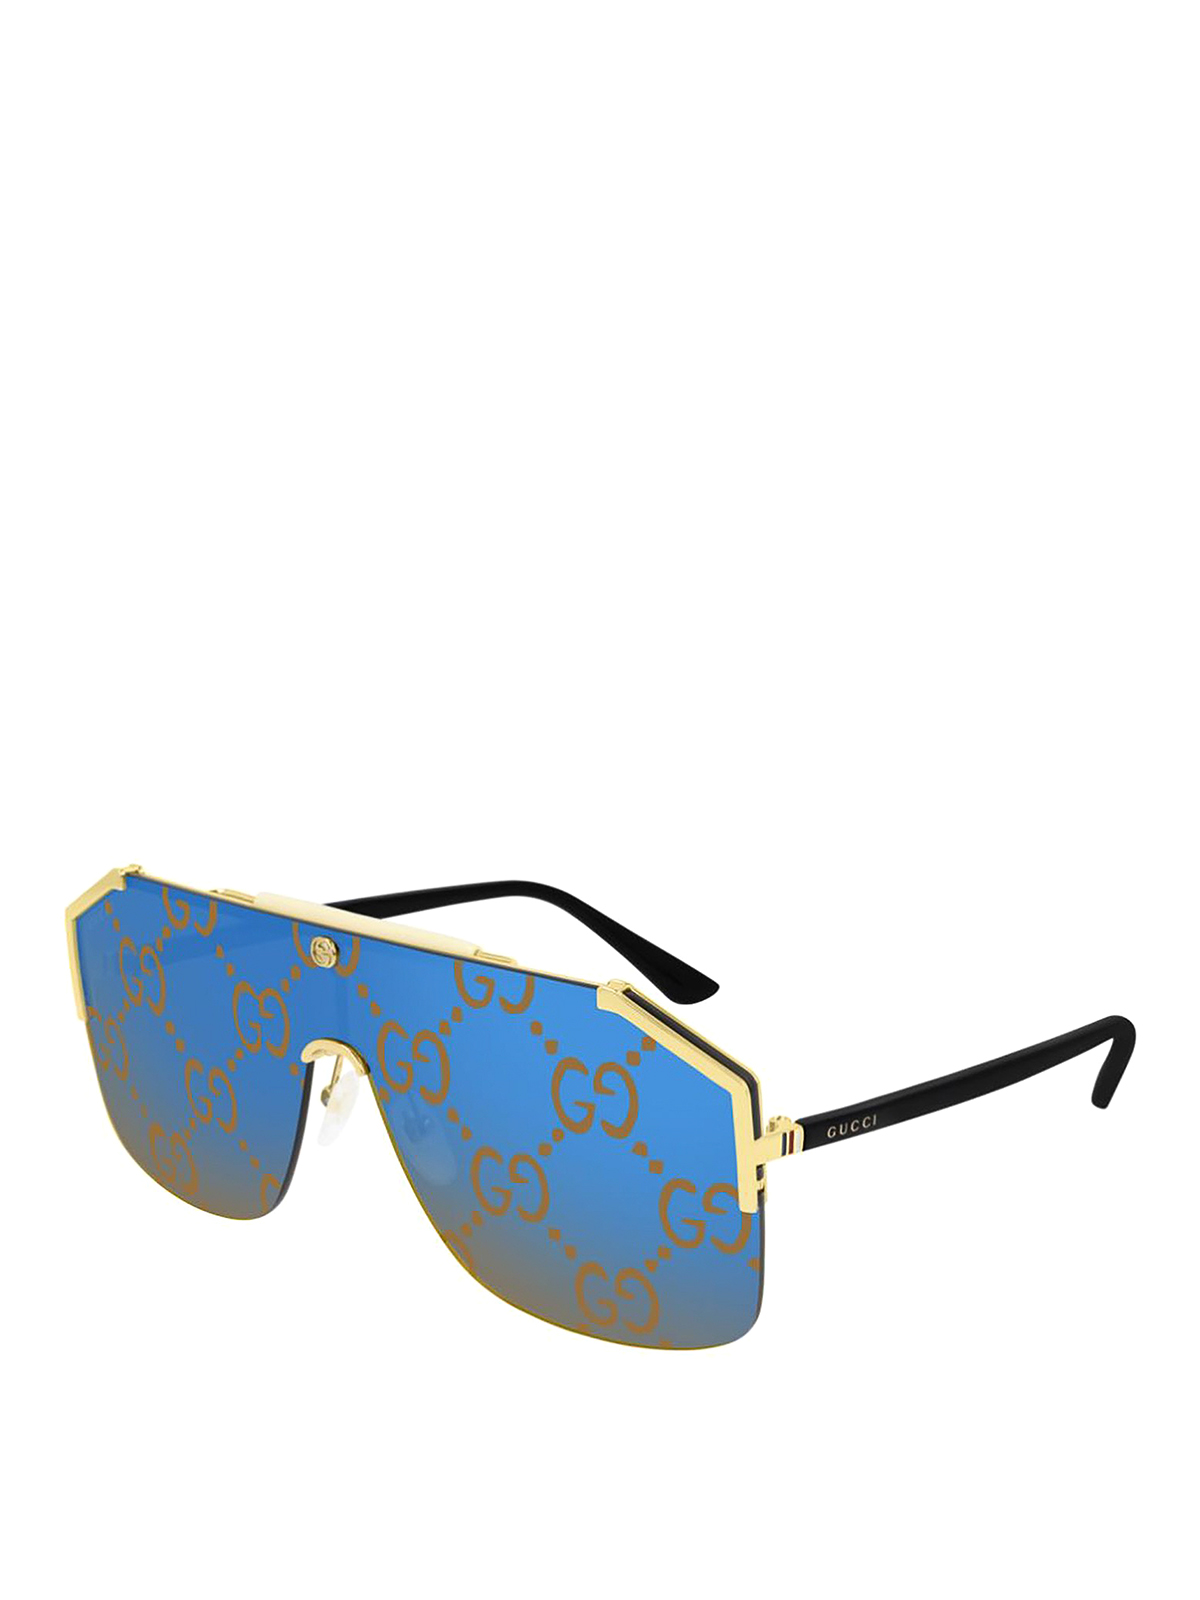 gucci printed sunglasses